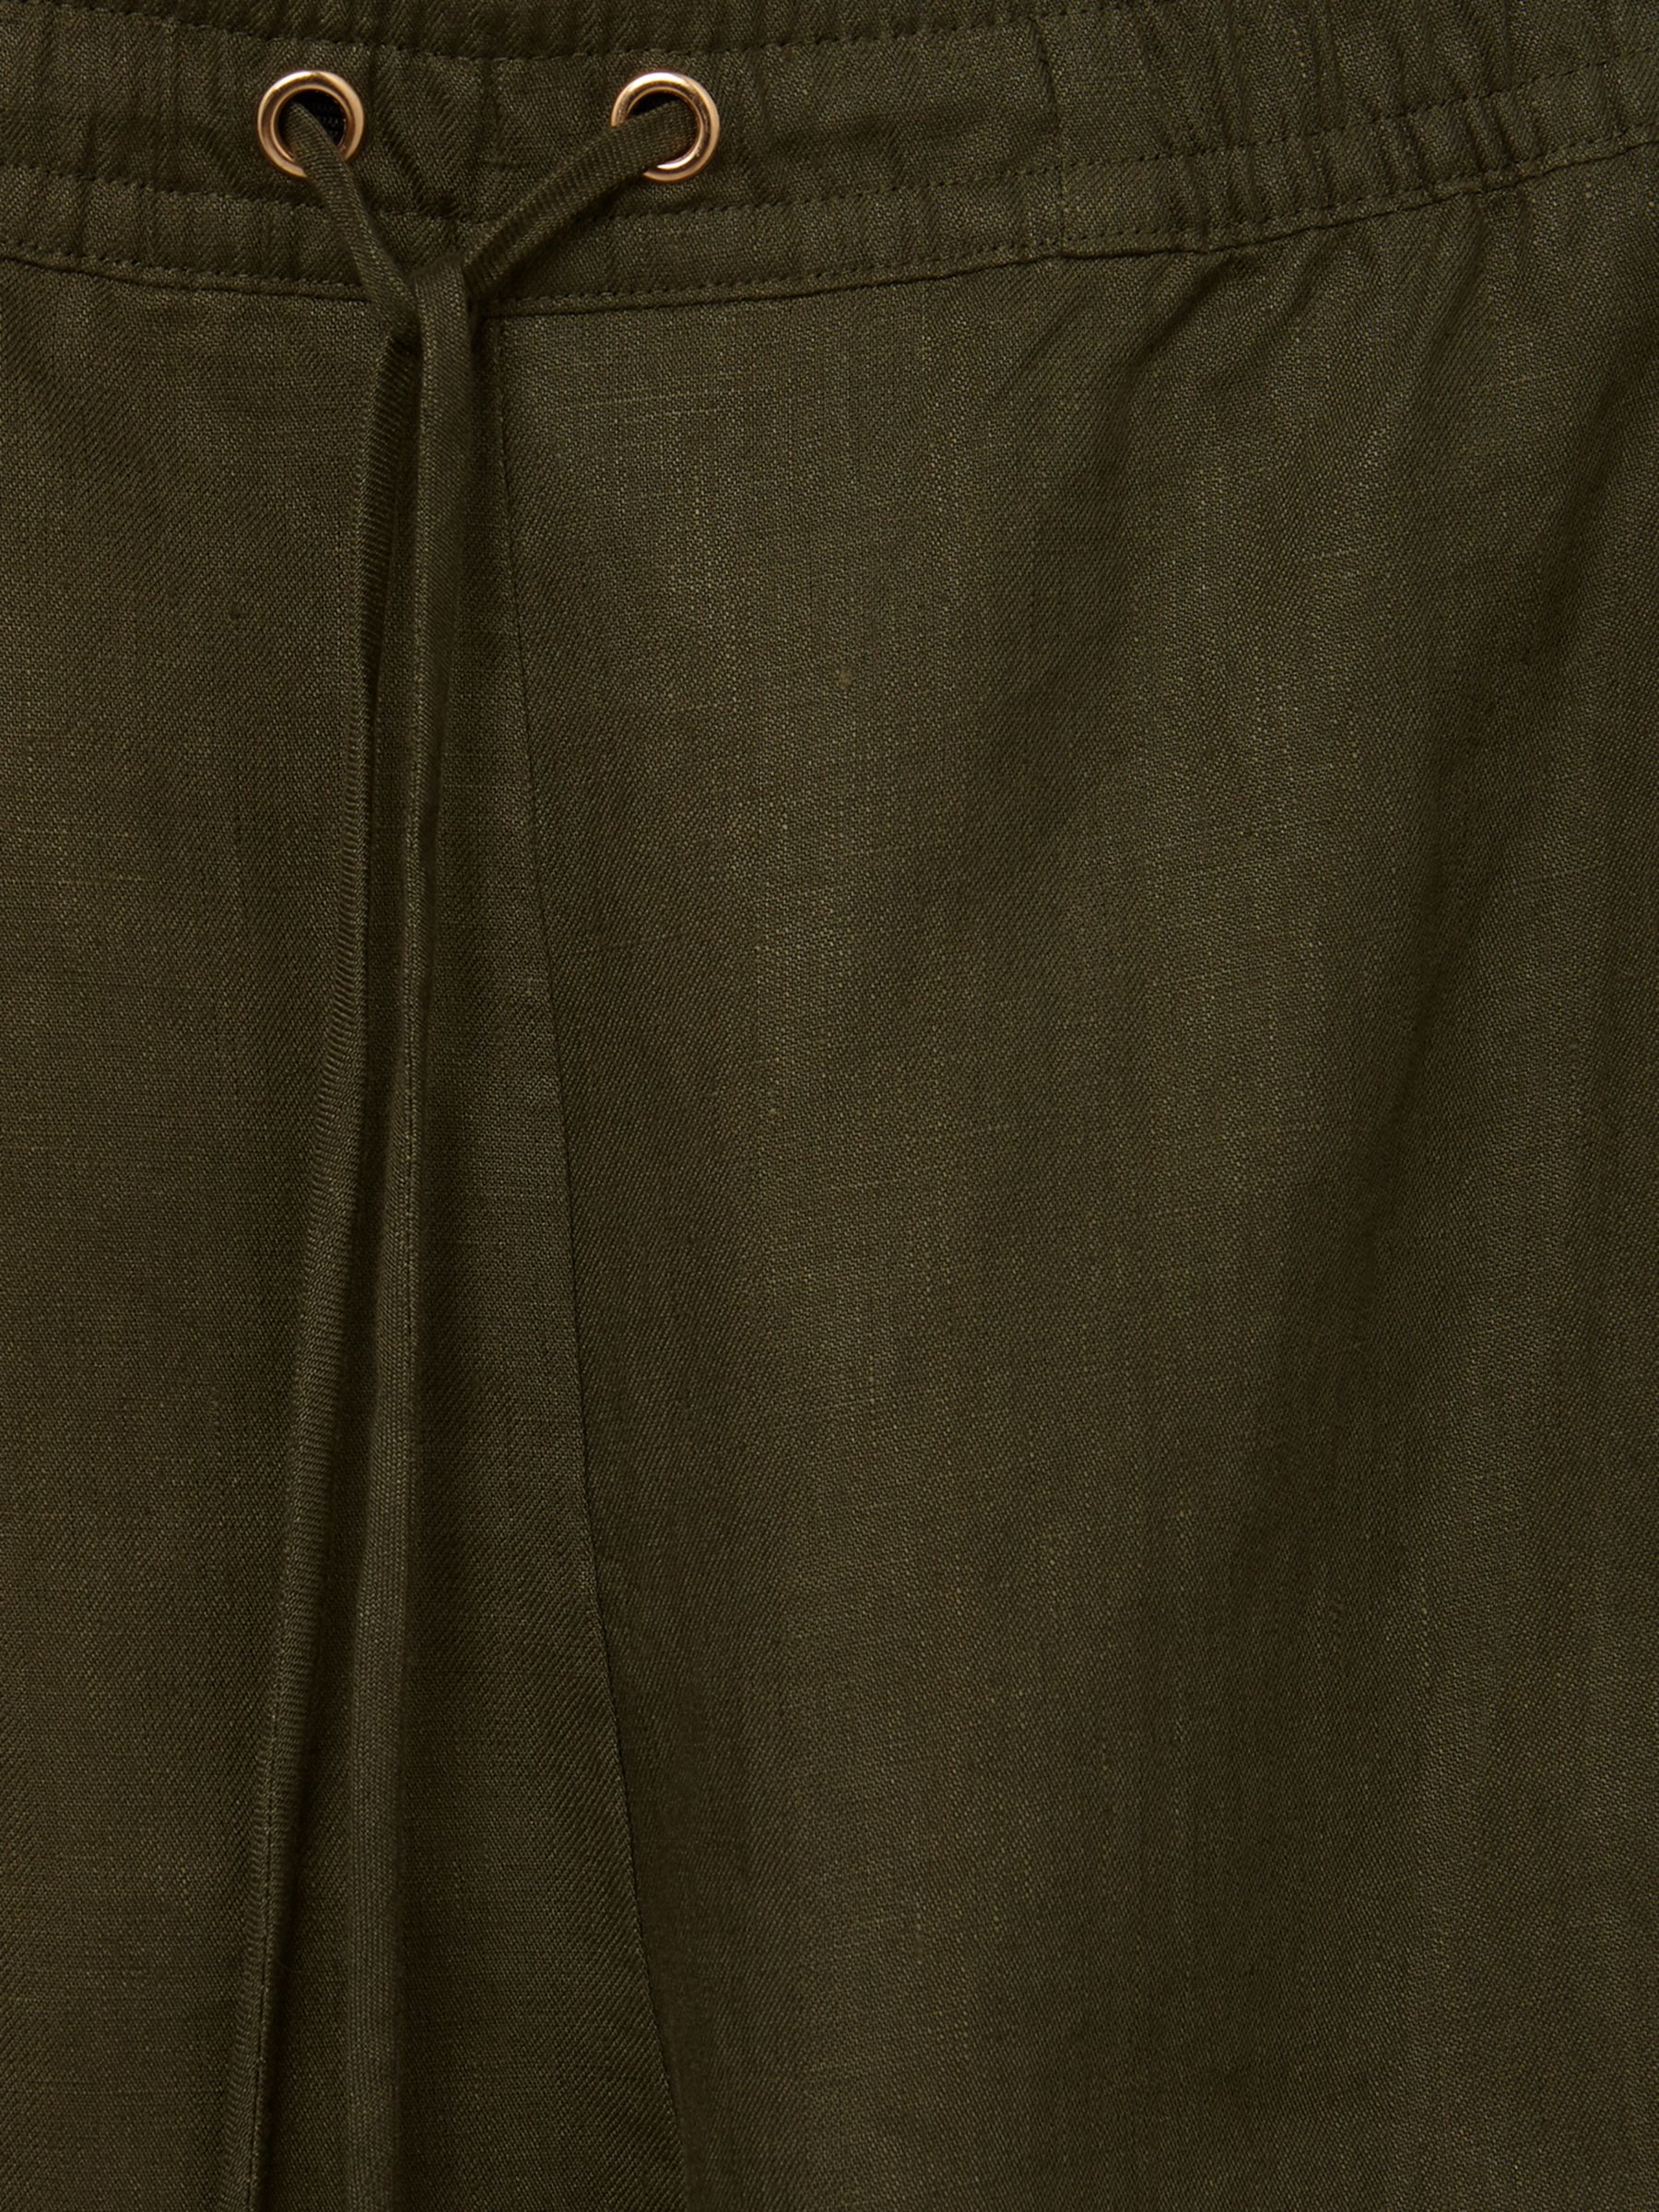 Phase Eight Drawstring Linen Trousers, Khaki, 8